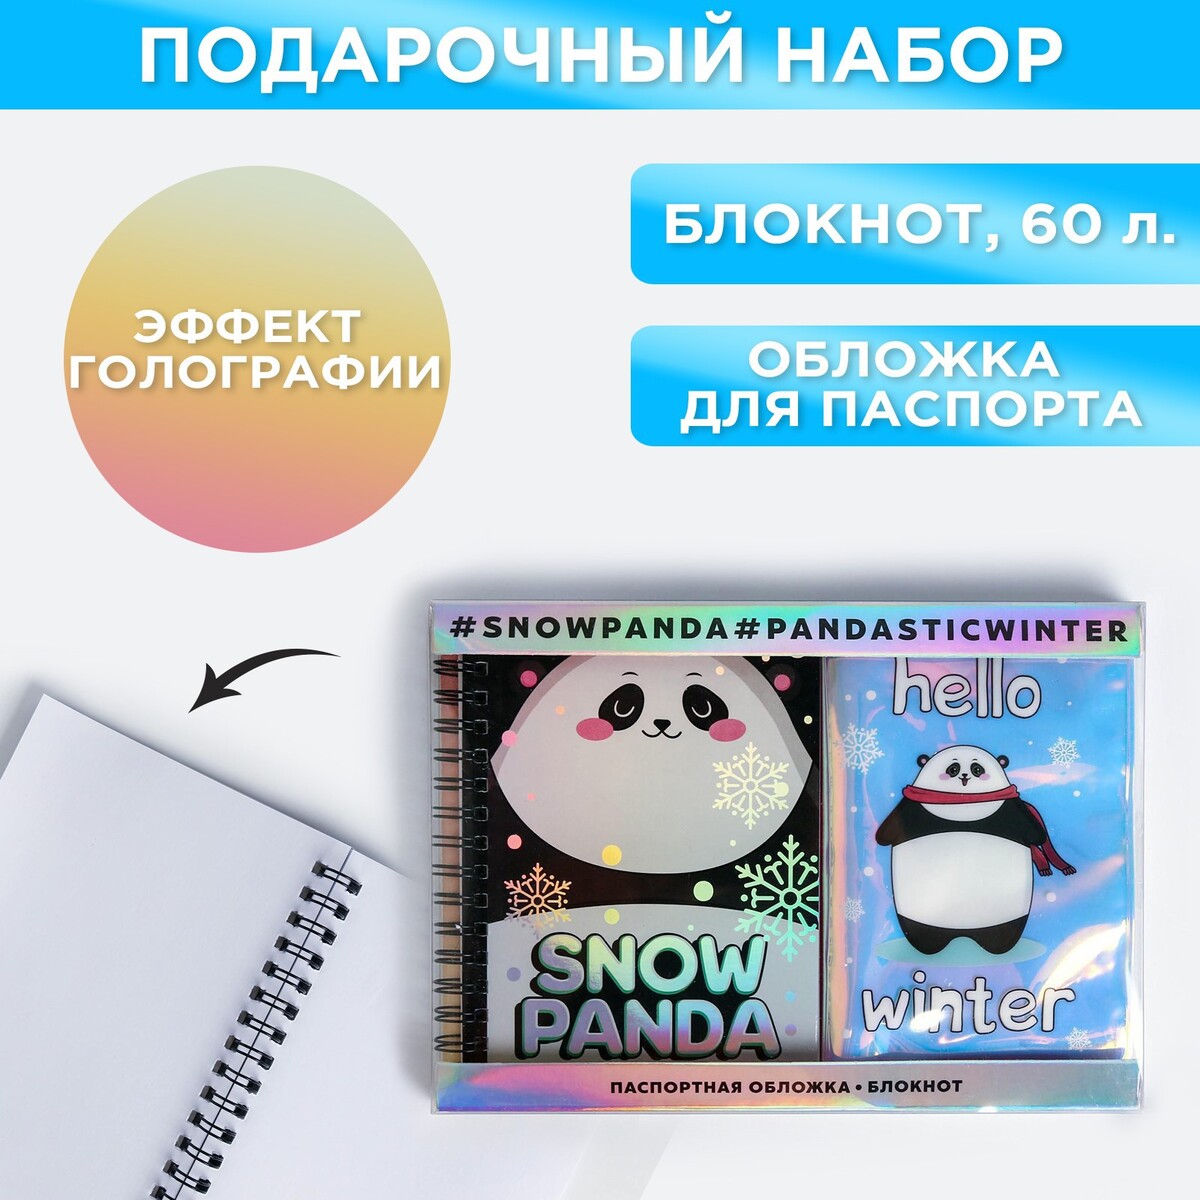 Подарочный набор: голографический блокнот и обложка snow panda набор коньки детские раздвижные snow cat с роликовой платформой защита р 34 37